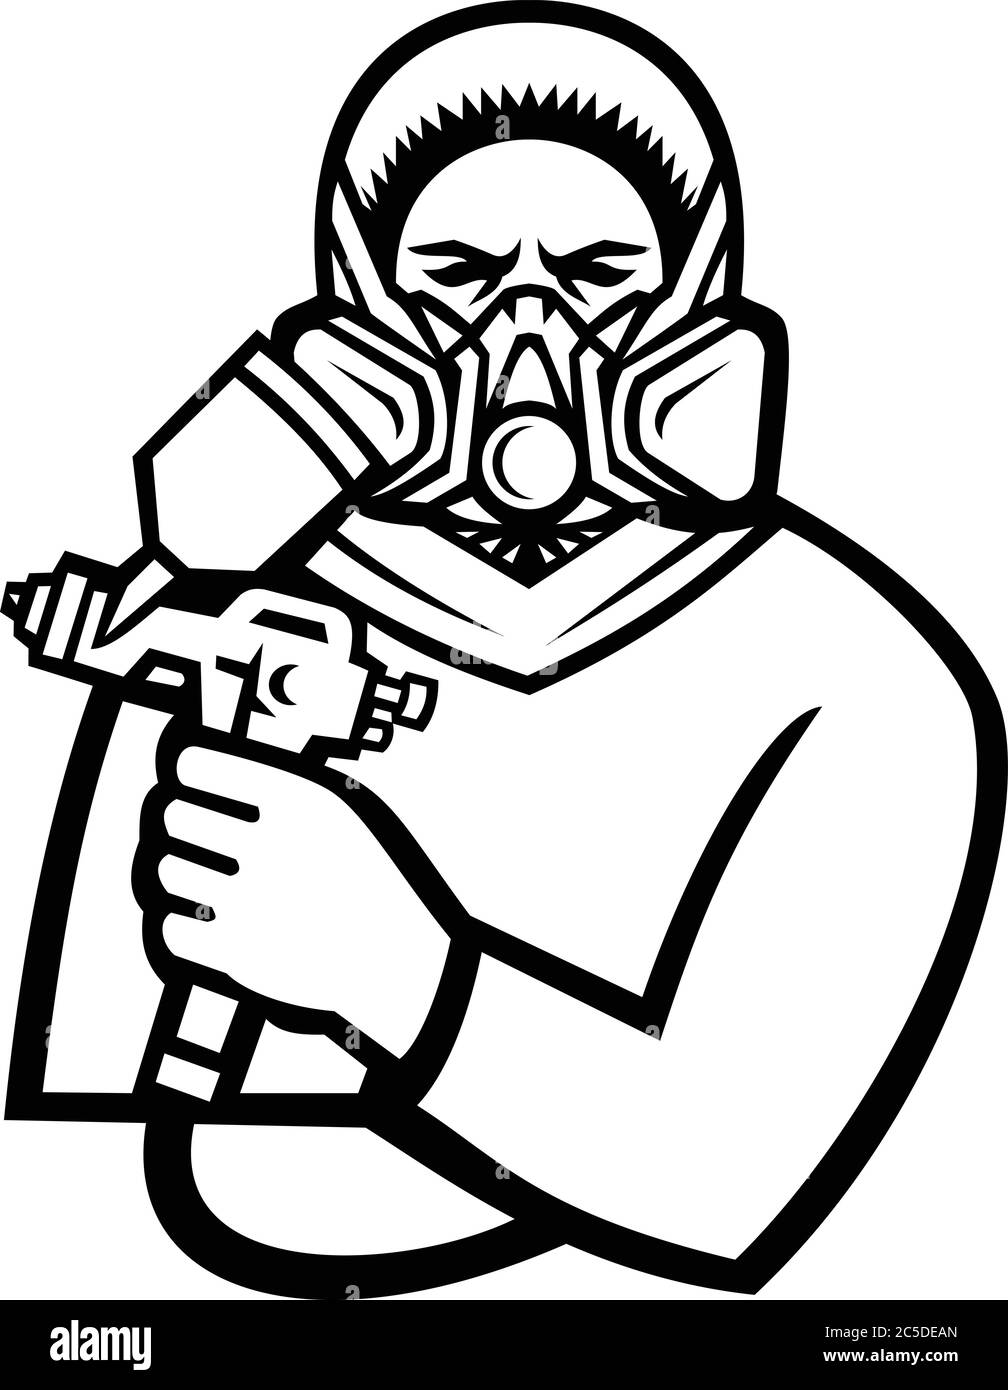 Mascotte noire et blanche illustration d'un masque de peinture ou masque de peinture industriel peinture laboueuse vue de l'avant sur isola Illustration de Vecteur